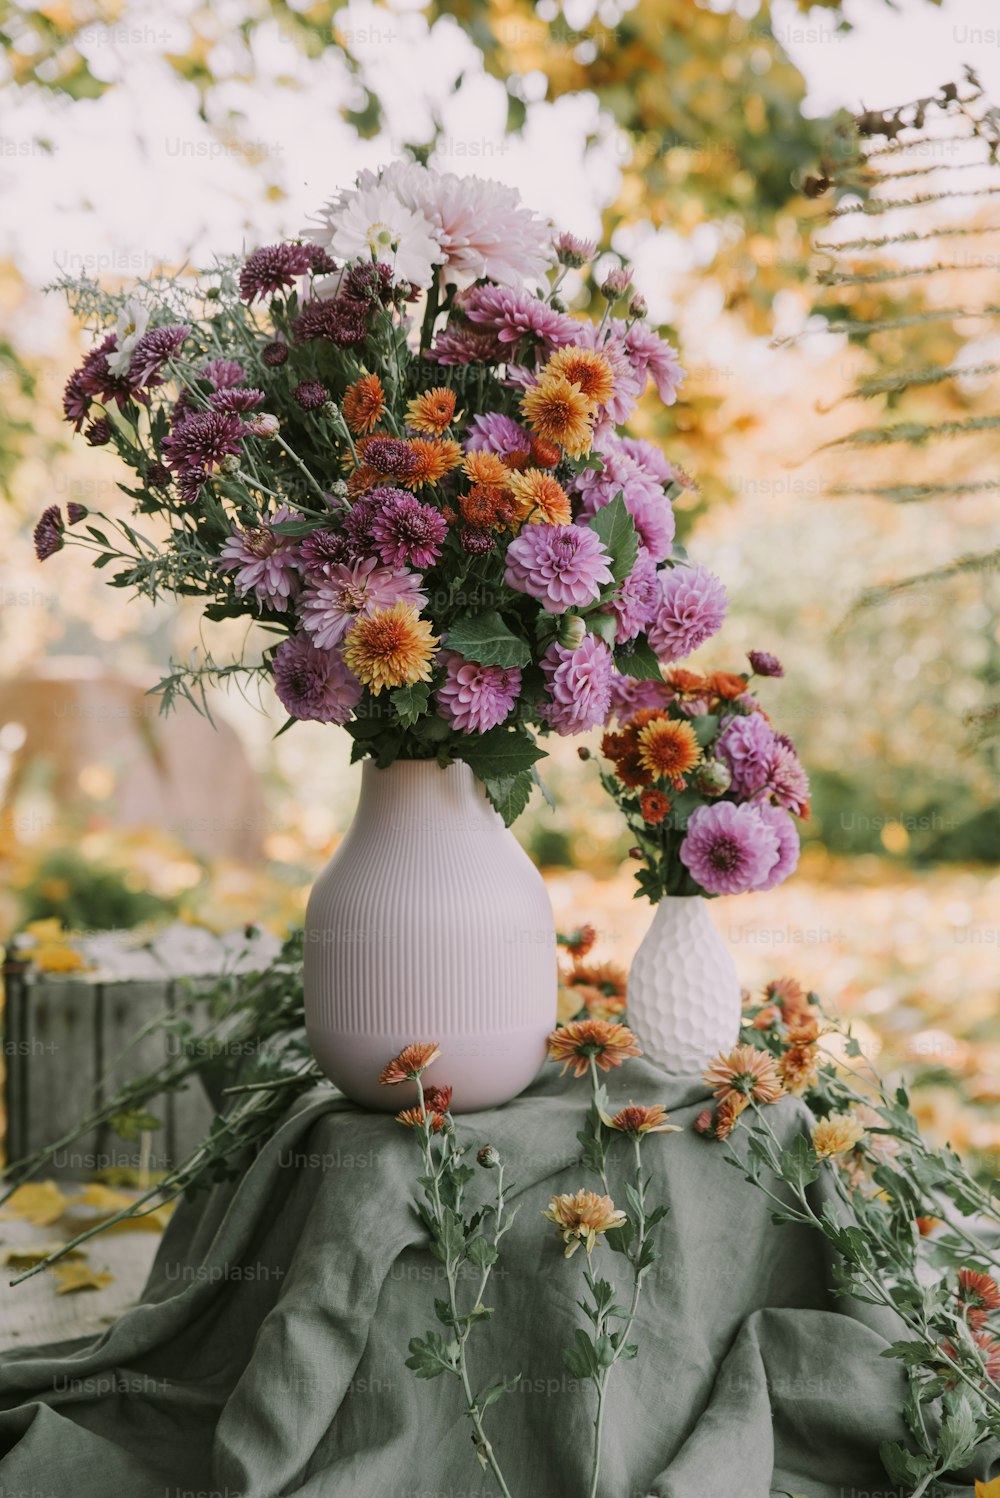 보라색과 주황색 꽃으로 채워진 흰색 꽃병